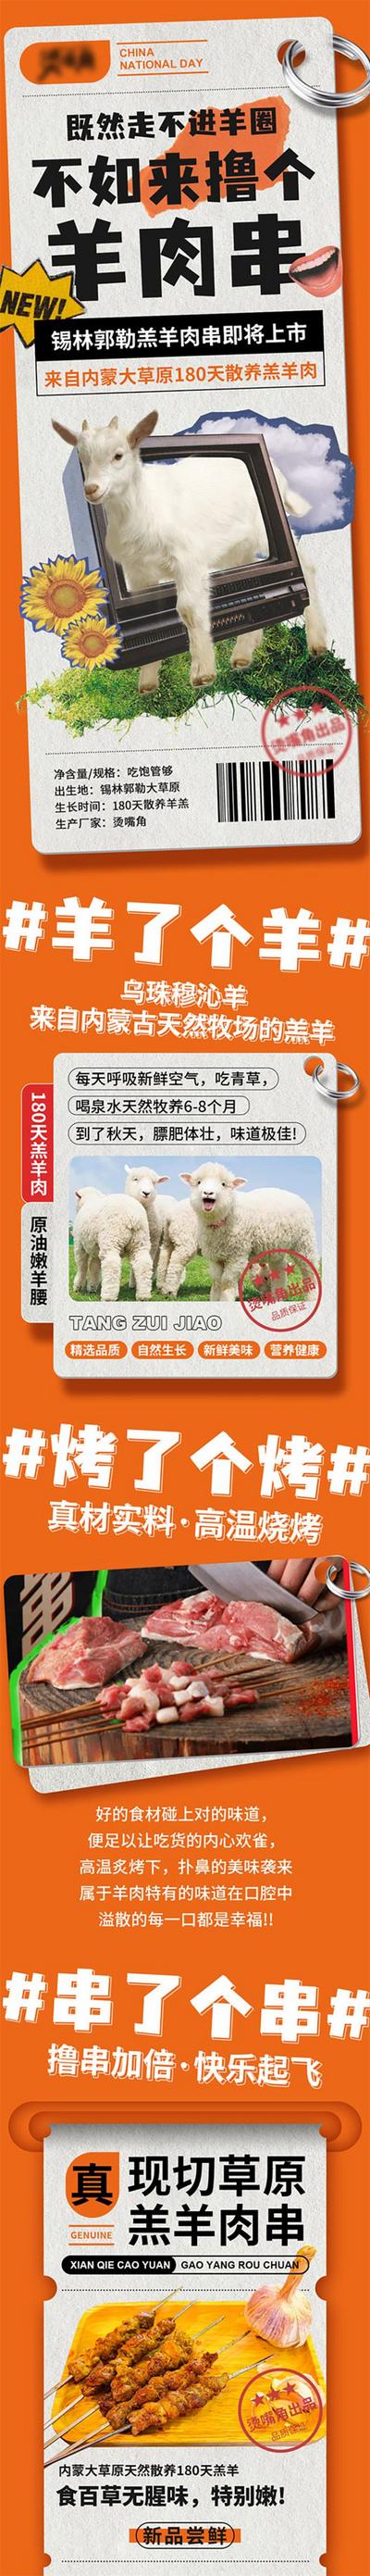 南门网 广告 海报 长图 烧烤 羊肉串 节日 公众号 烧烤 餐饮